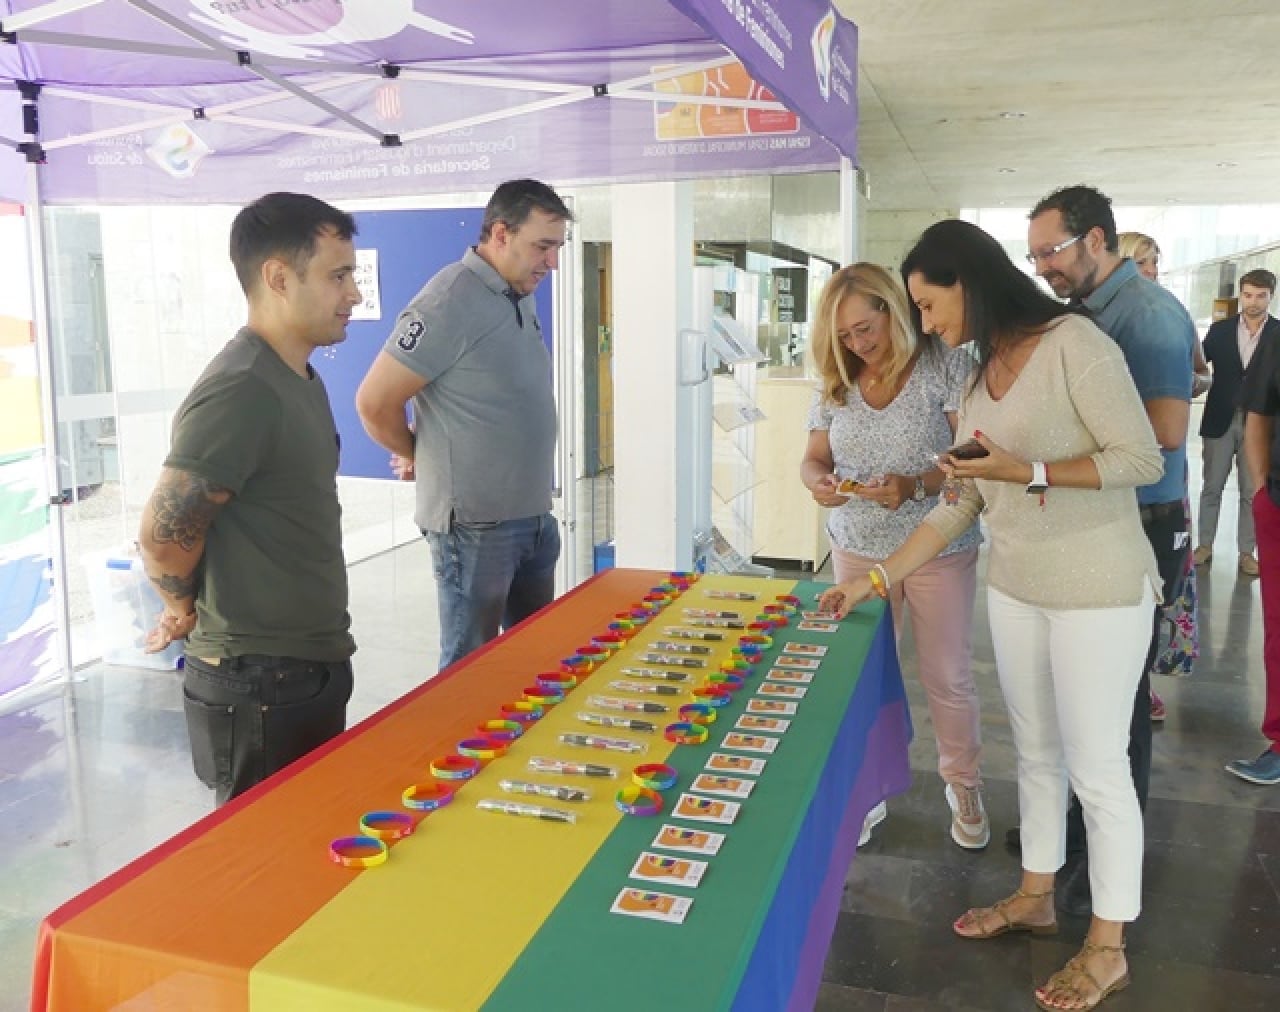 El Servei d’Atenció Integral (SAI) de Salou compta amb un stand, per tal de conscienciar la ciutadania sobre la diversitat d’orientació sexual i d’identitat de gènere